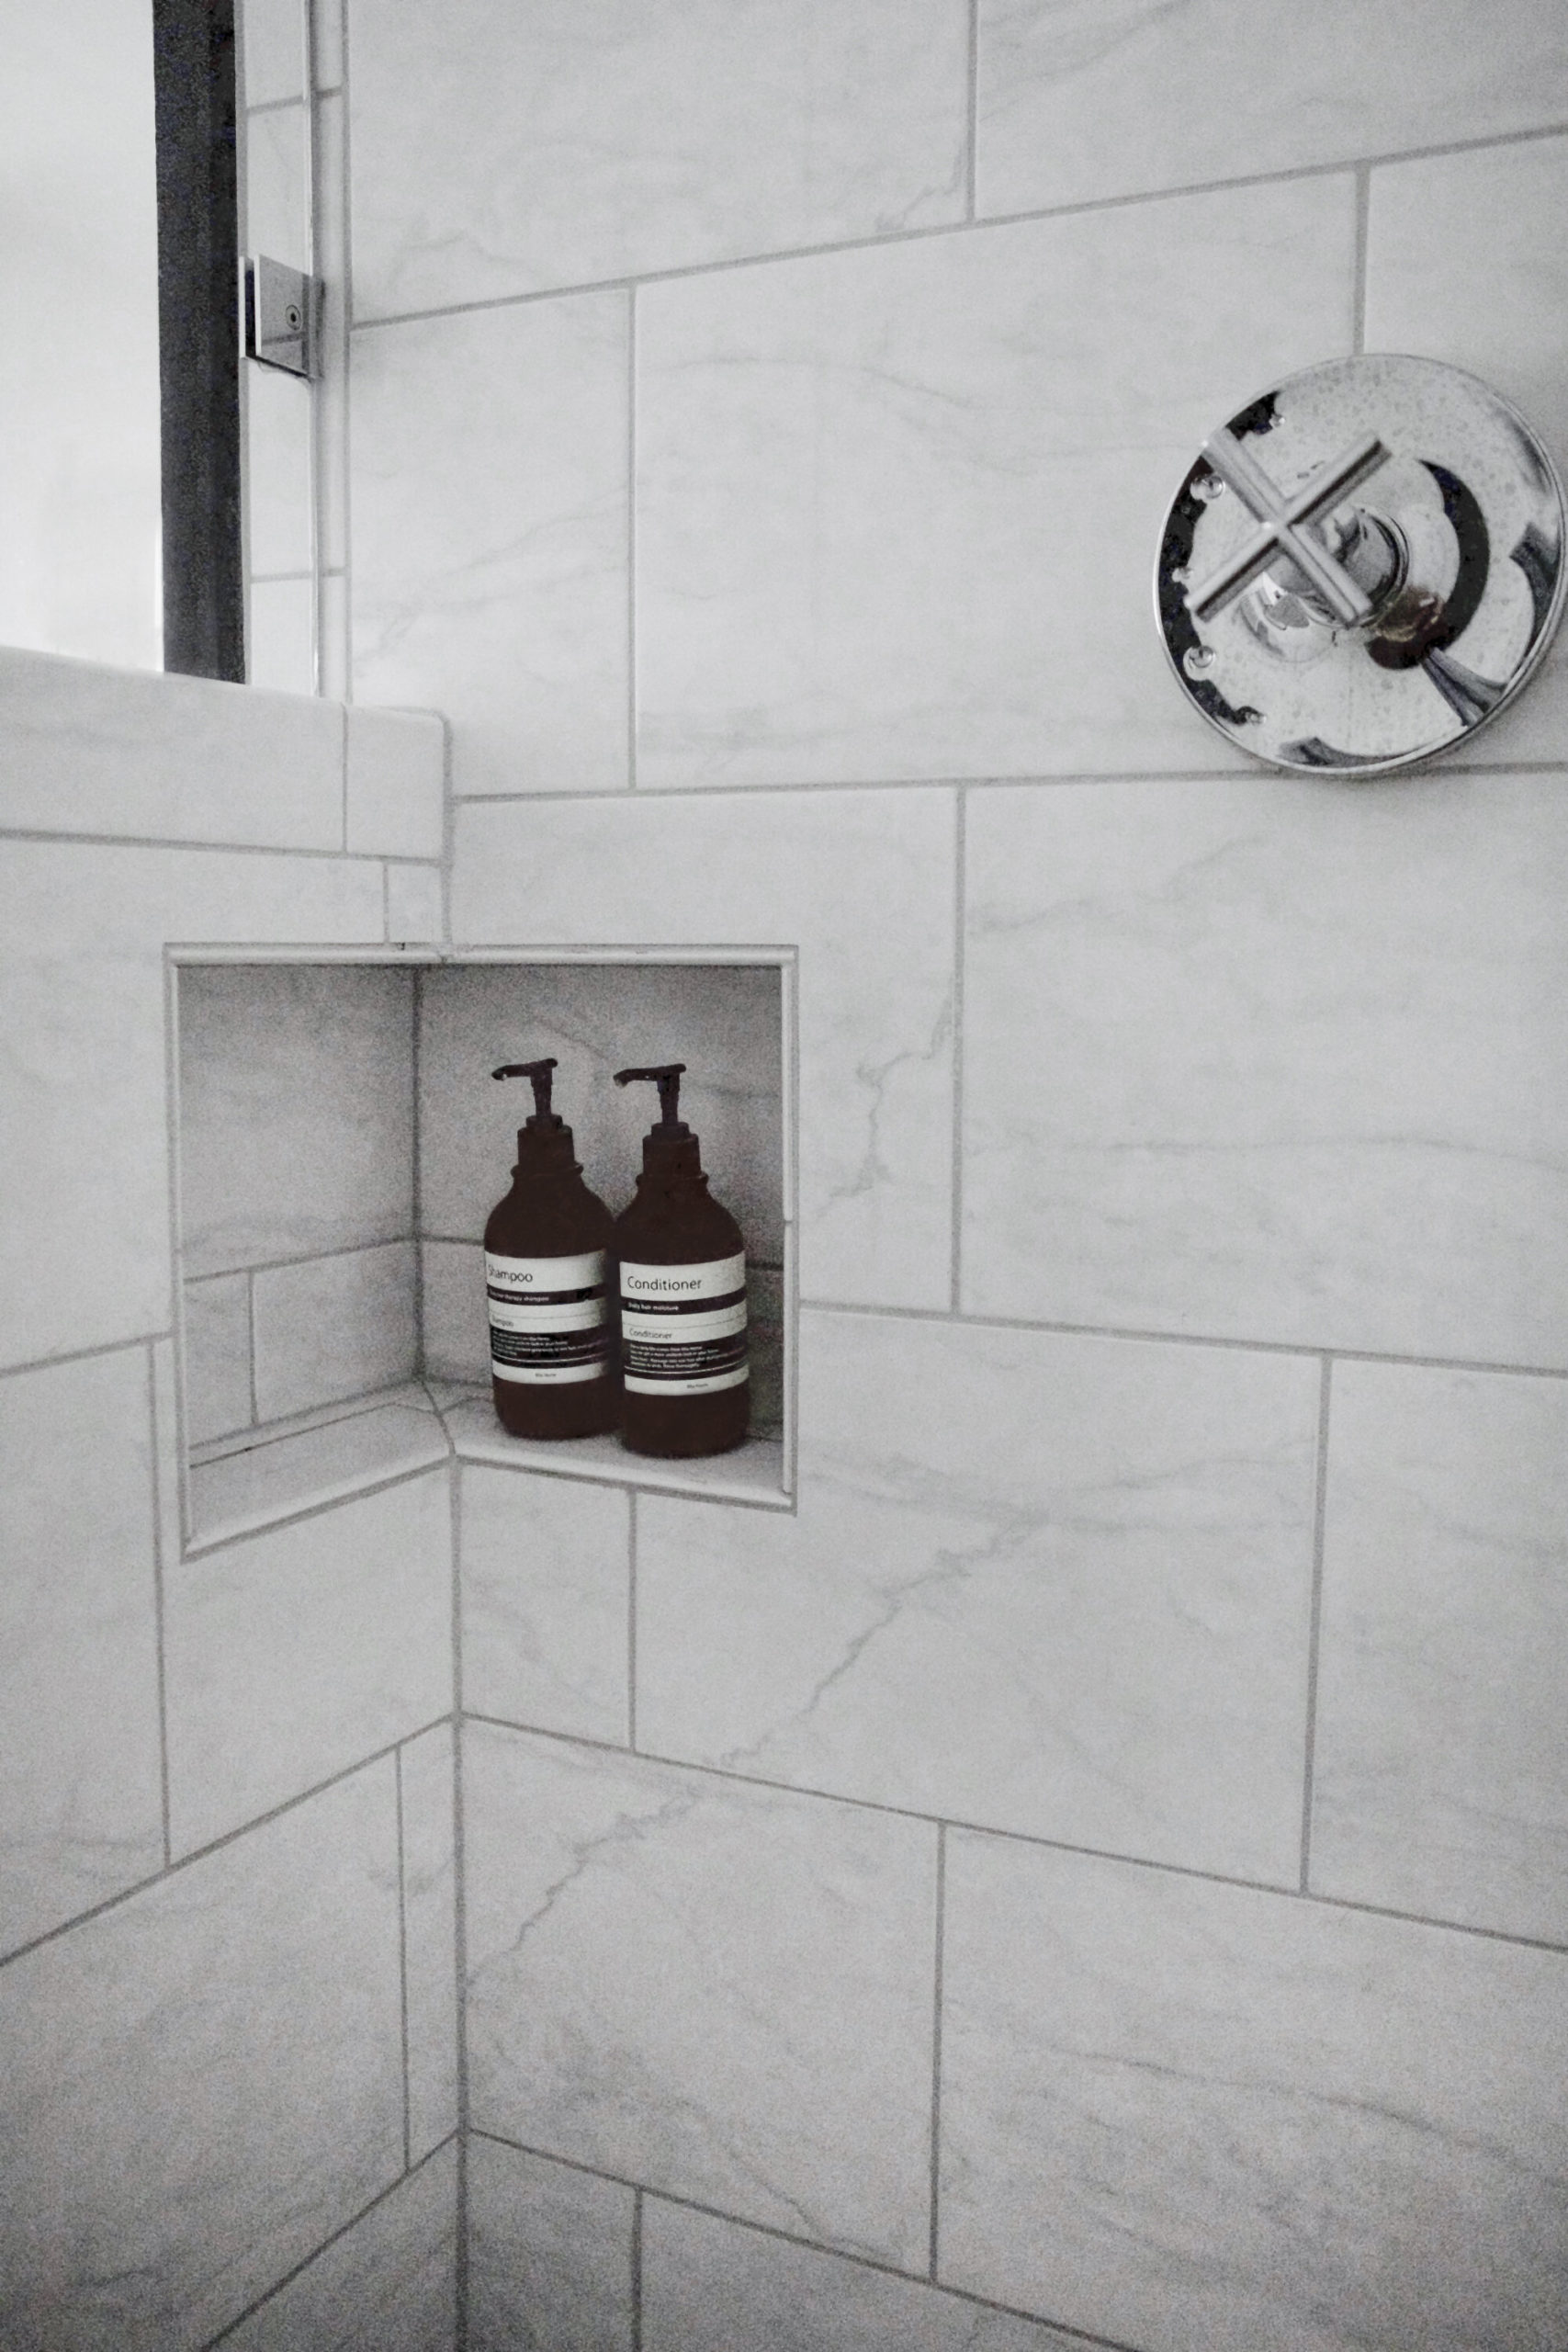 Wall Tile // Shower Fixture